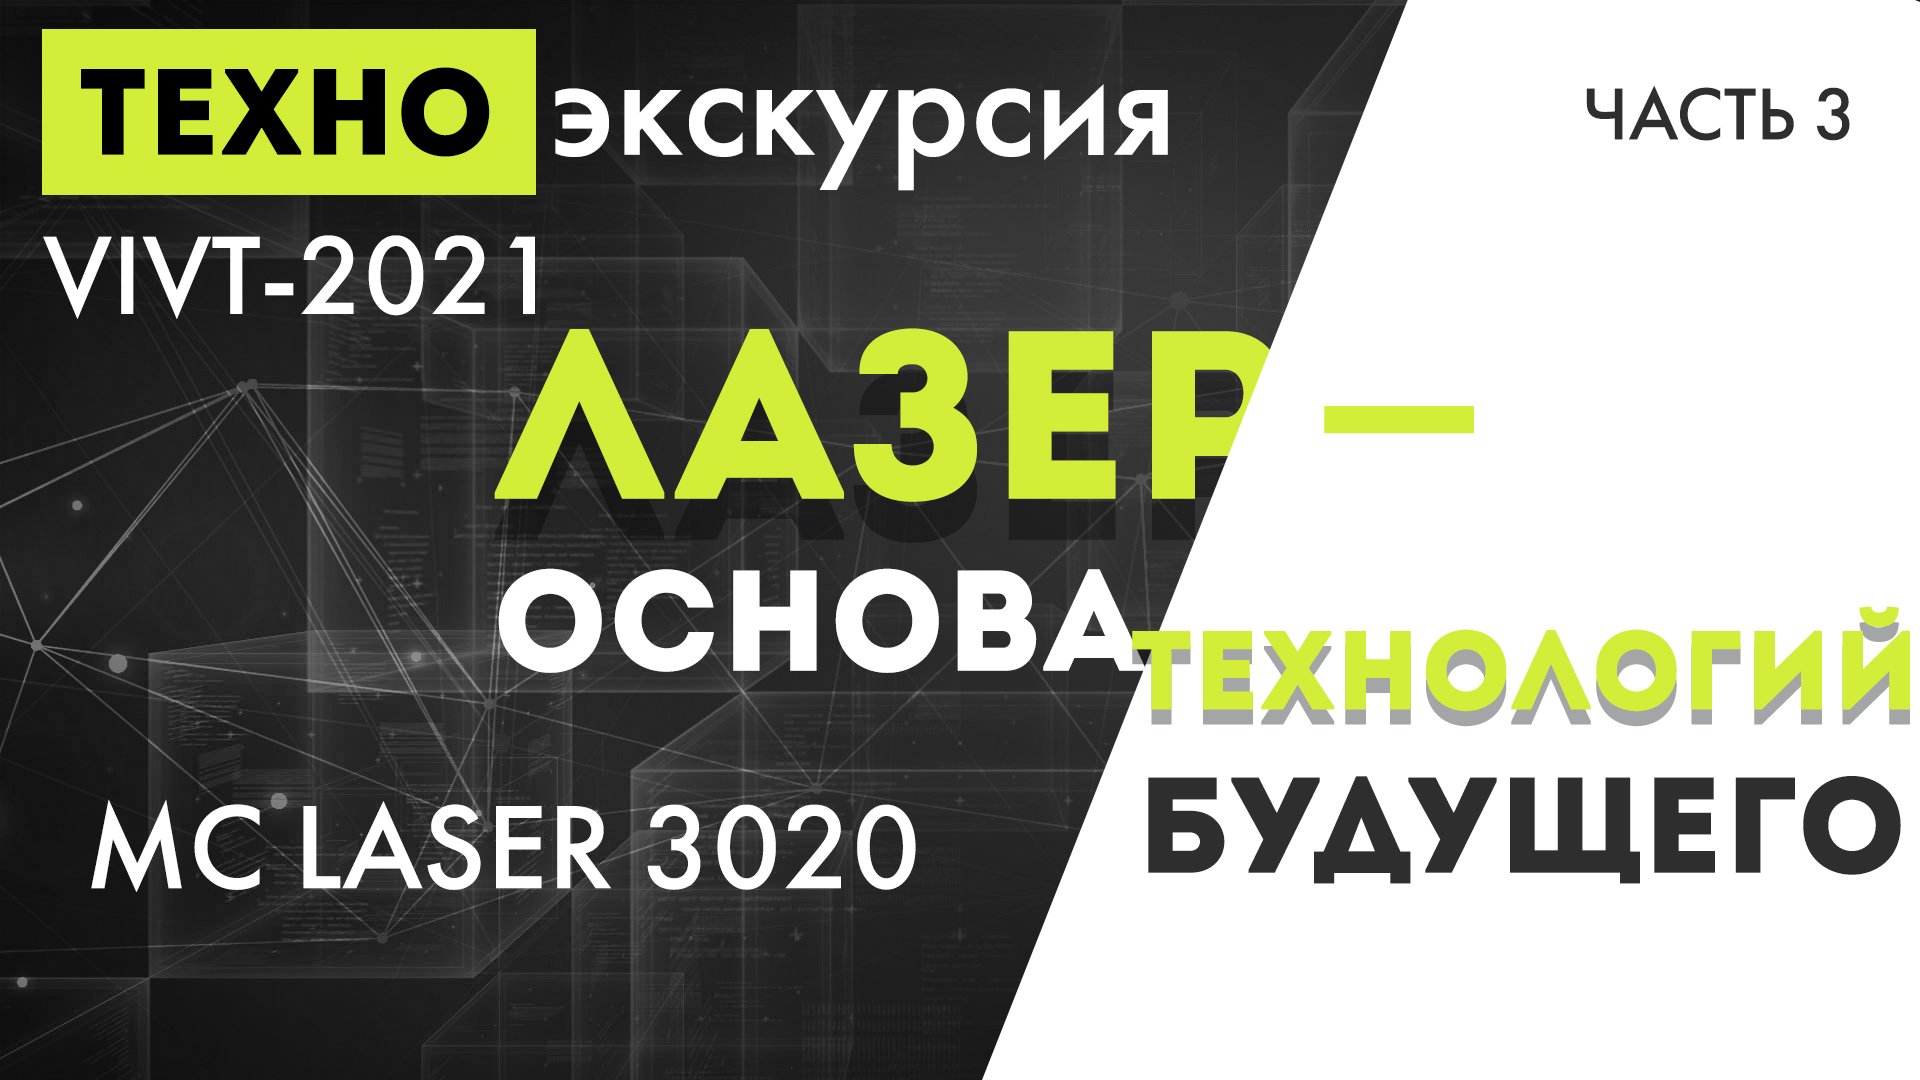 Техно-экскурсия VIVT-2021 часть 3 - "MC LASER 3020. Лазер - основа технологий будущего"